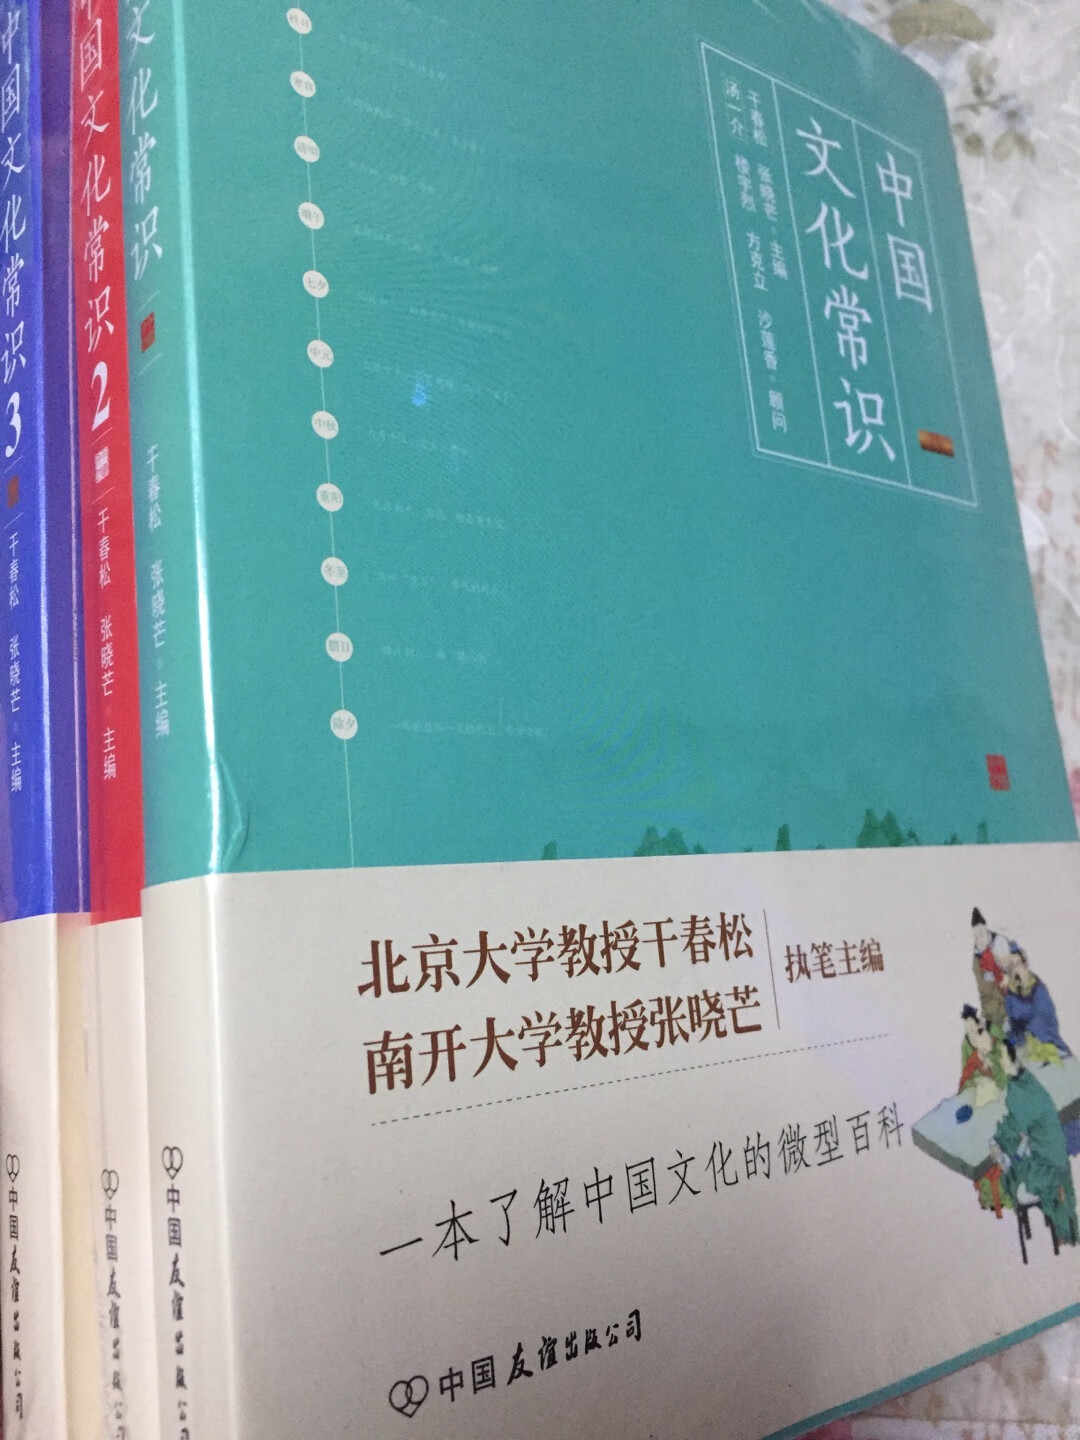 有塑封16开，三本一套内容丰富，很透彻地了解中国文化，值得推荐。